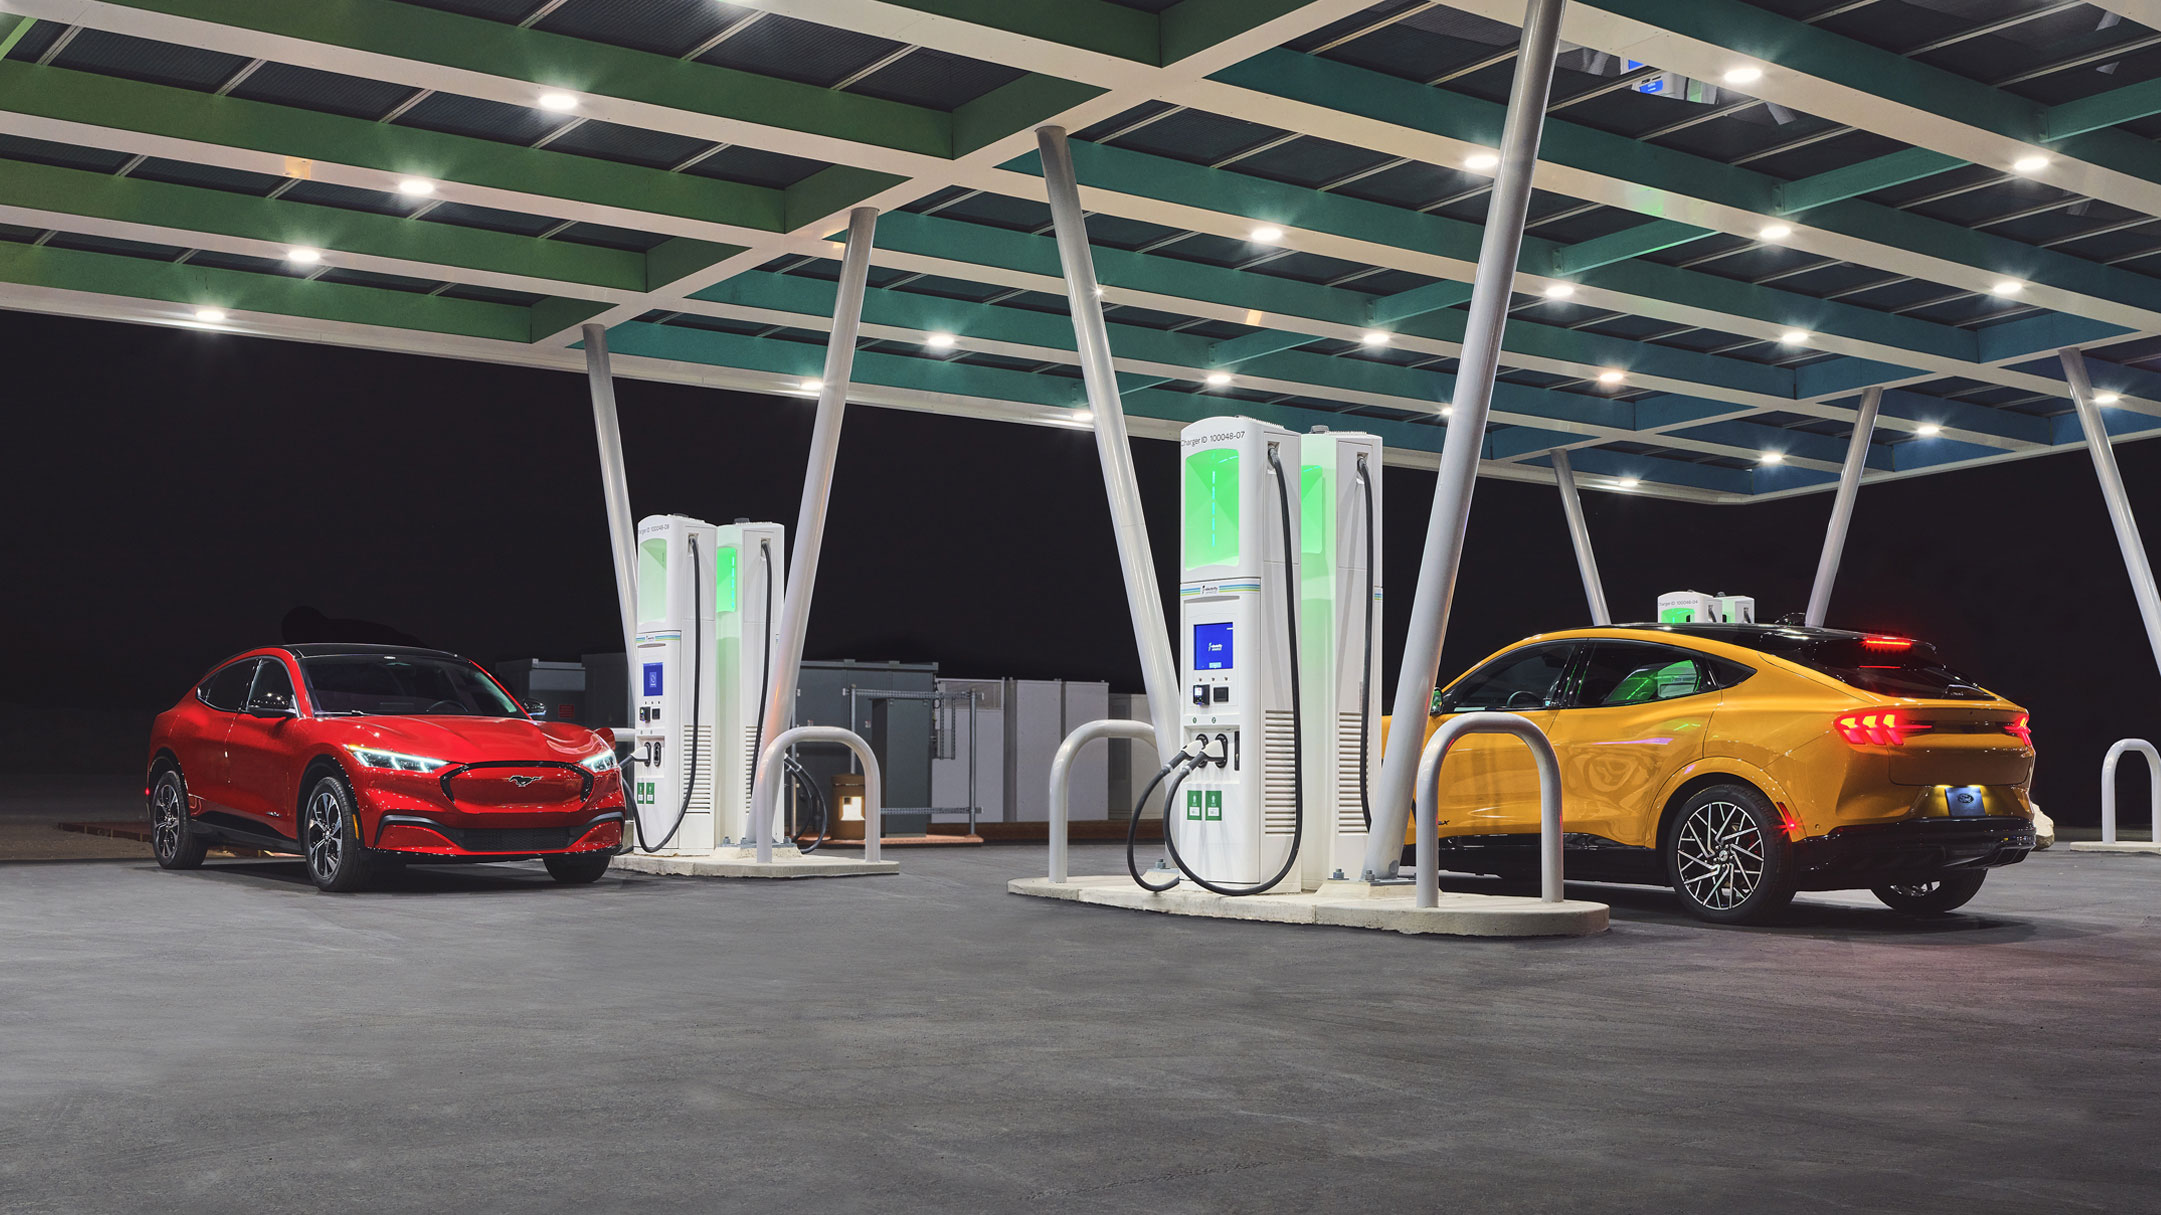 Cars charging at a charging station